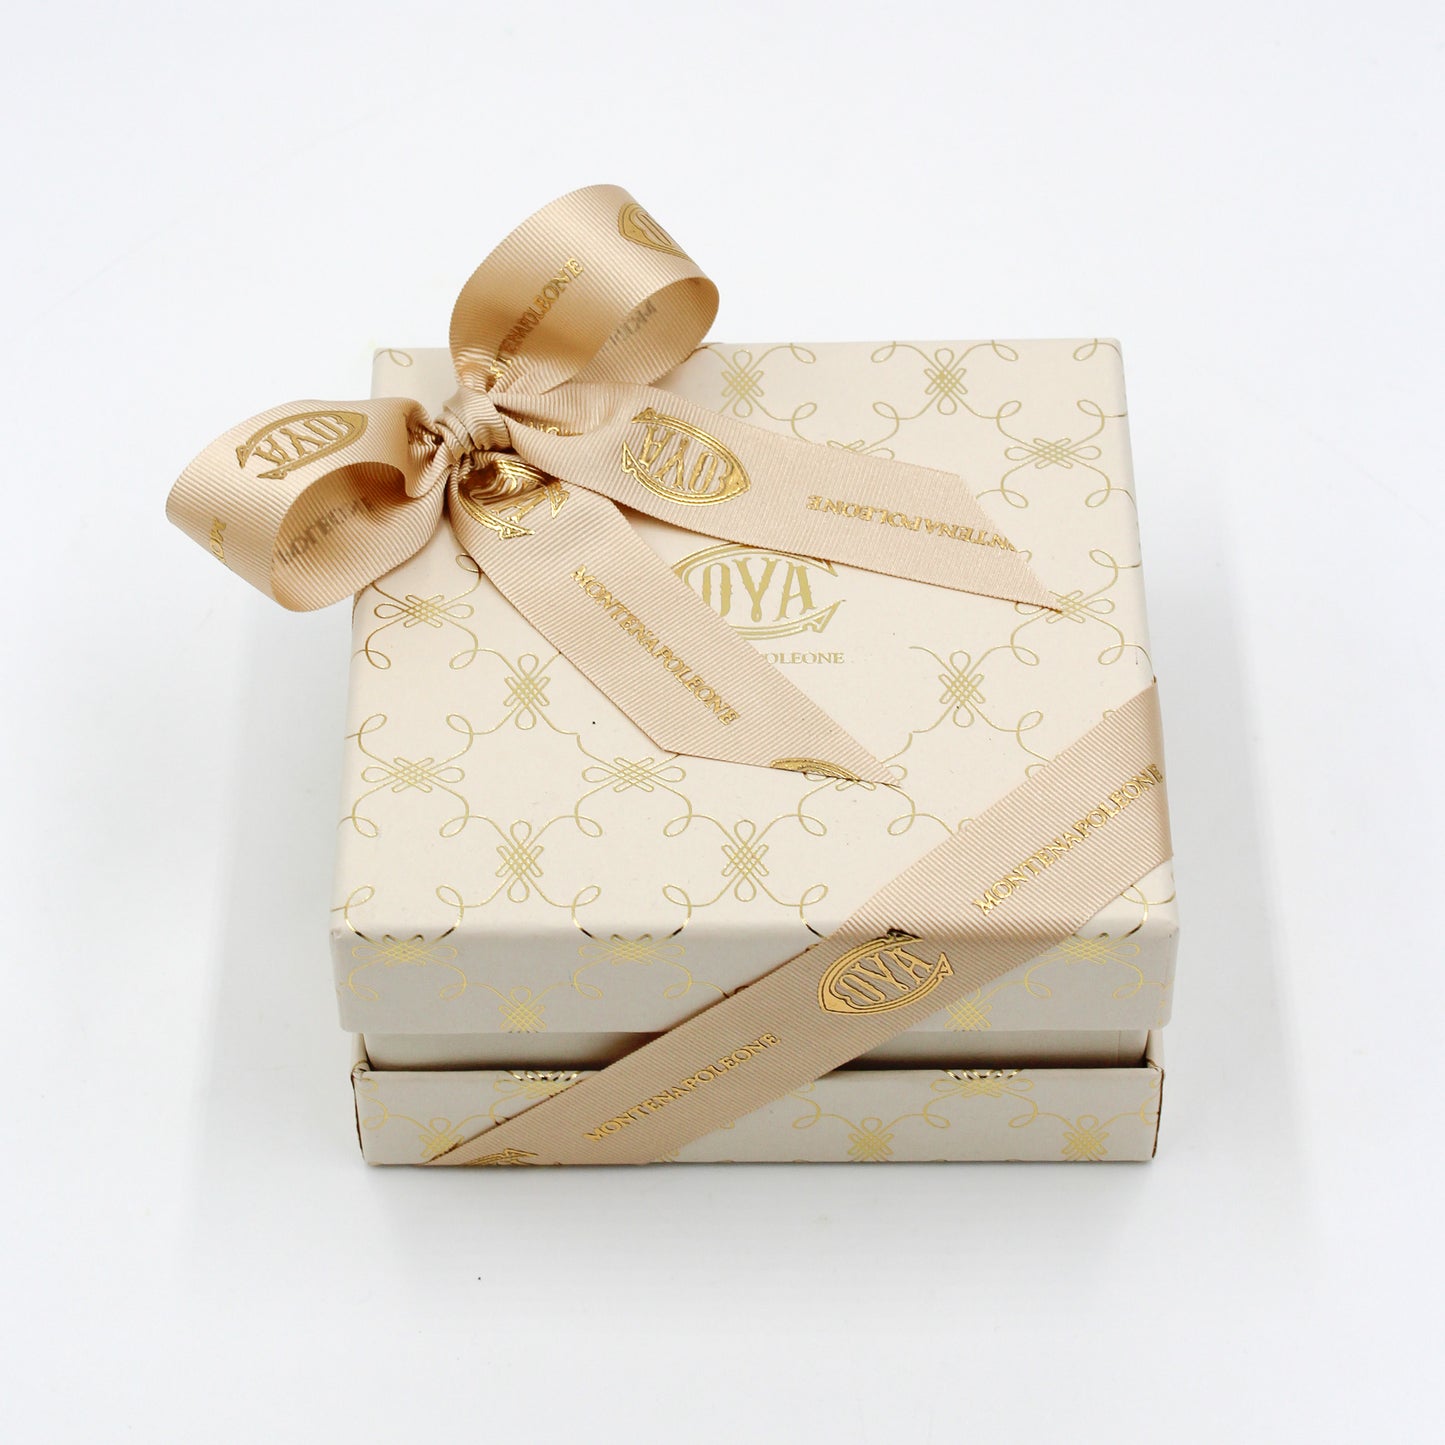 Boîte Cadeau avec Pralines Logo Cova 90 gr.